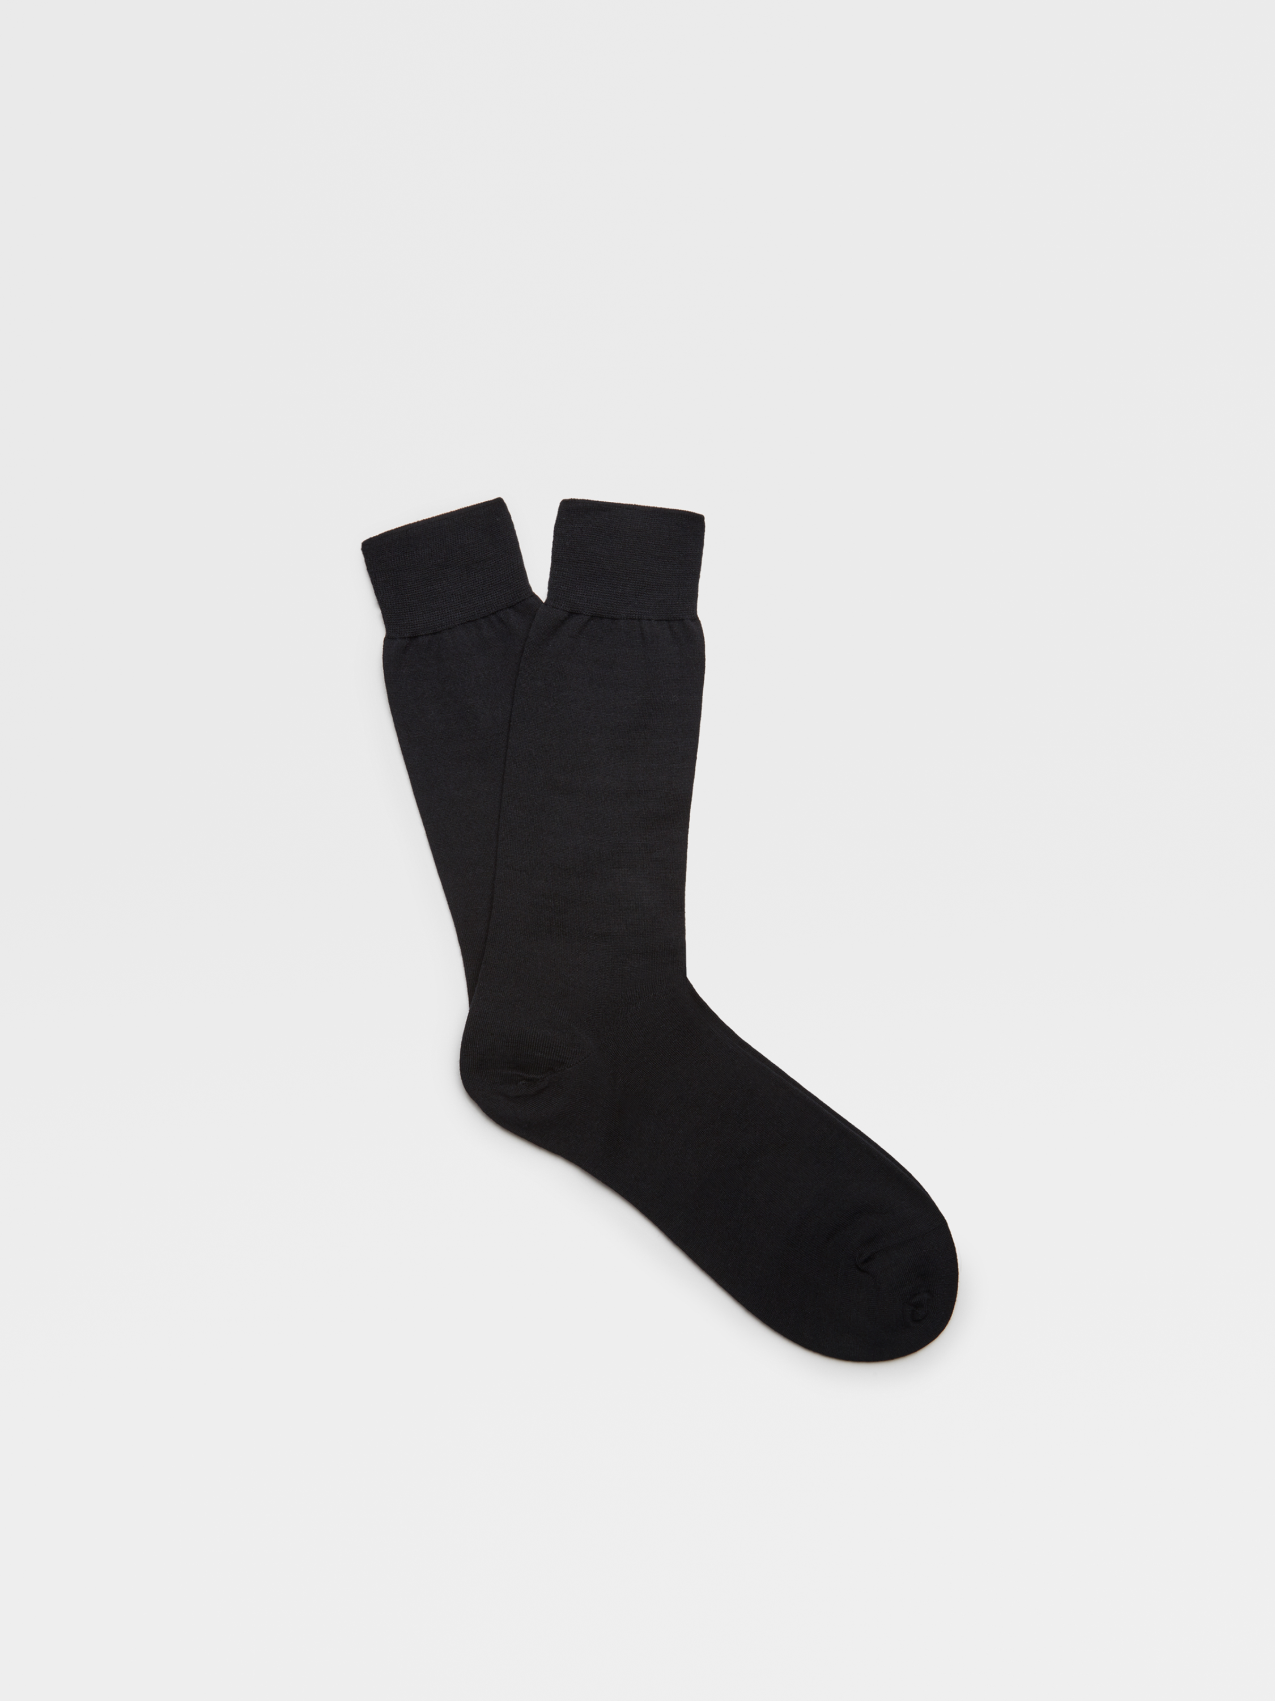 Black Wool Mid Calf Socks